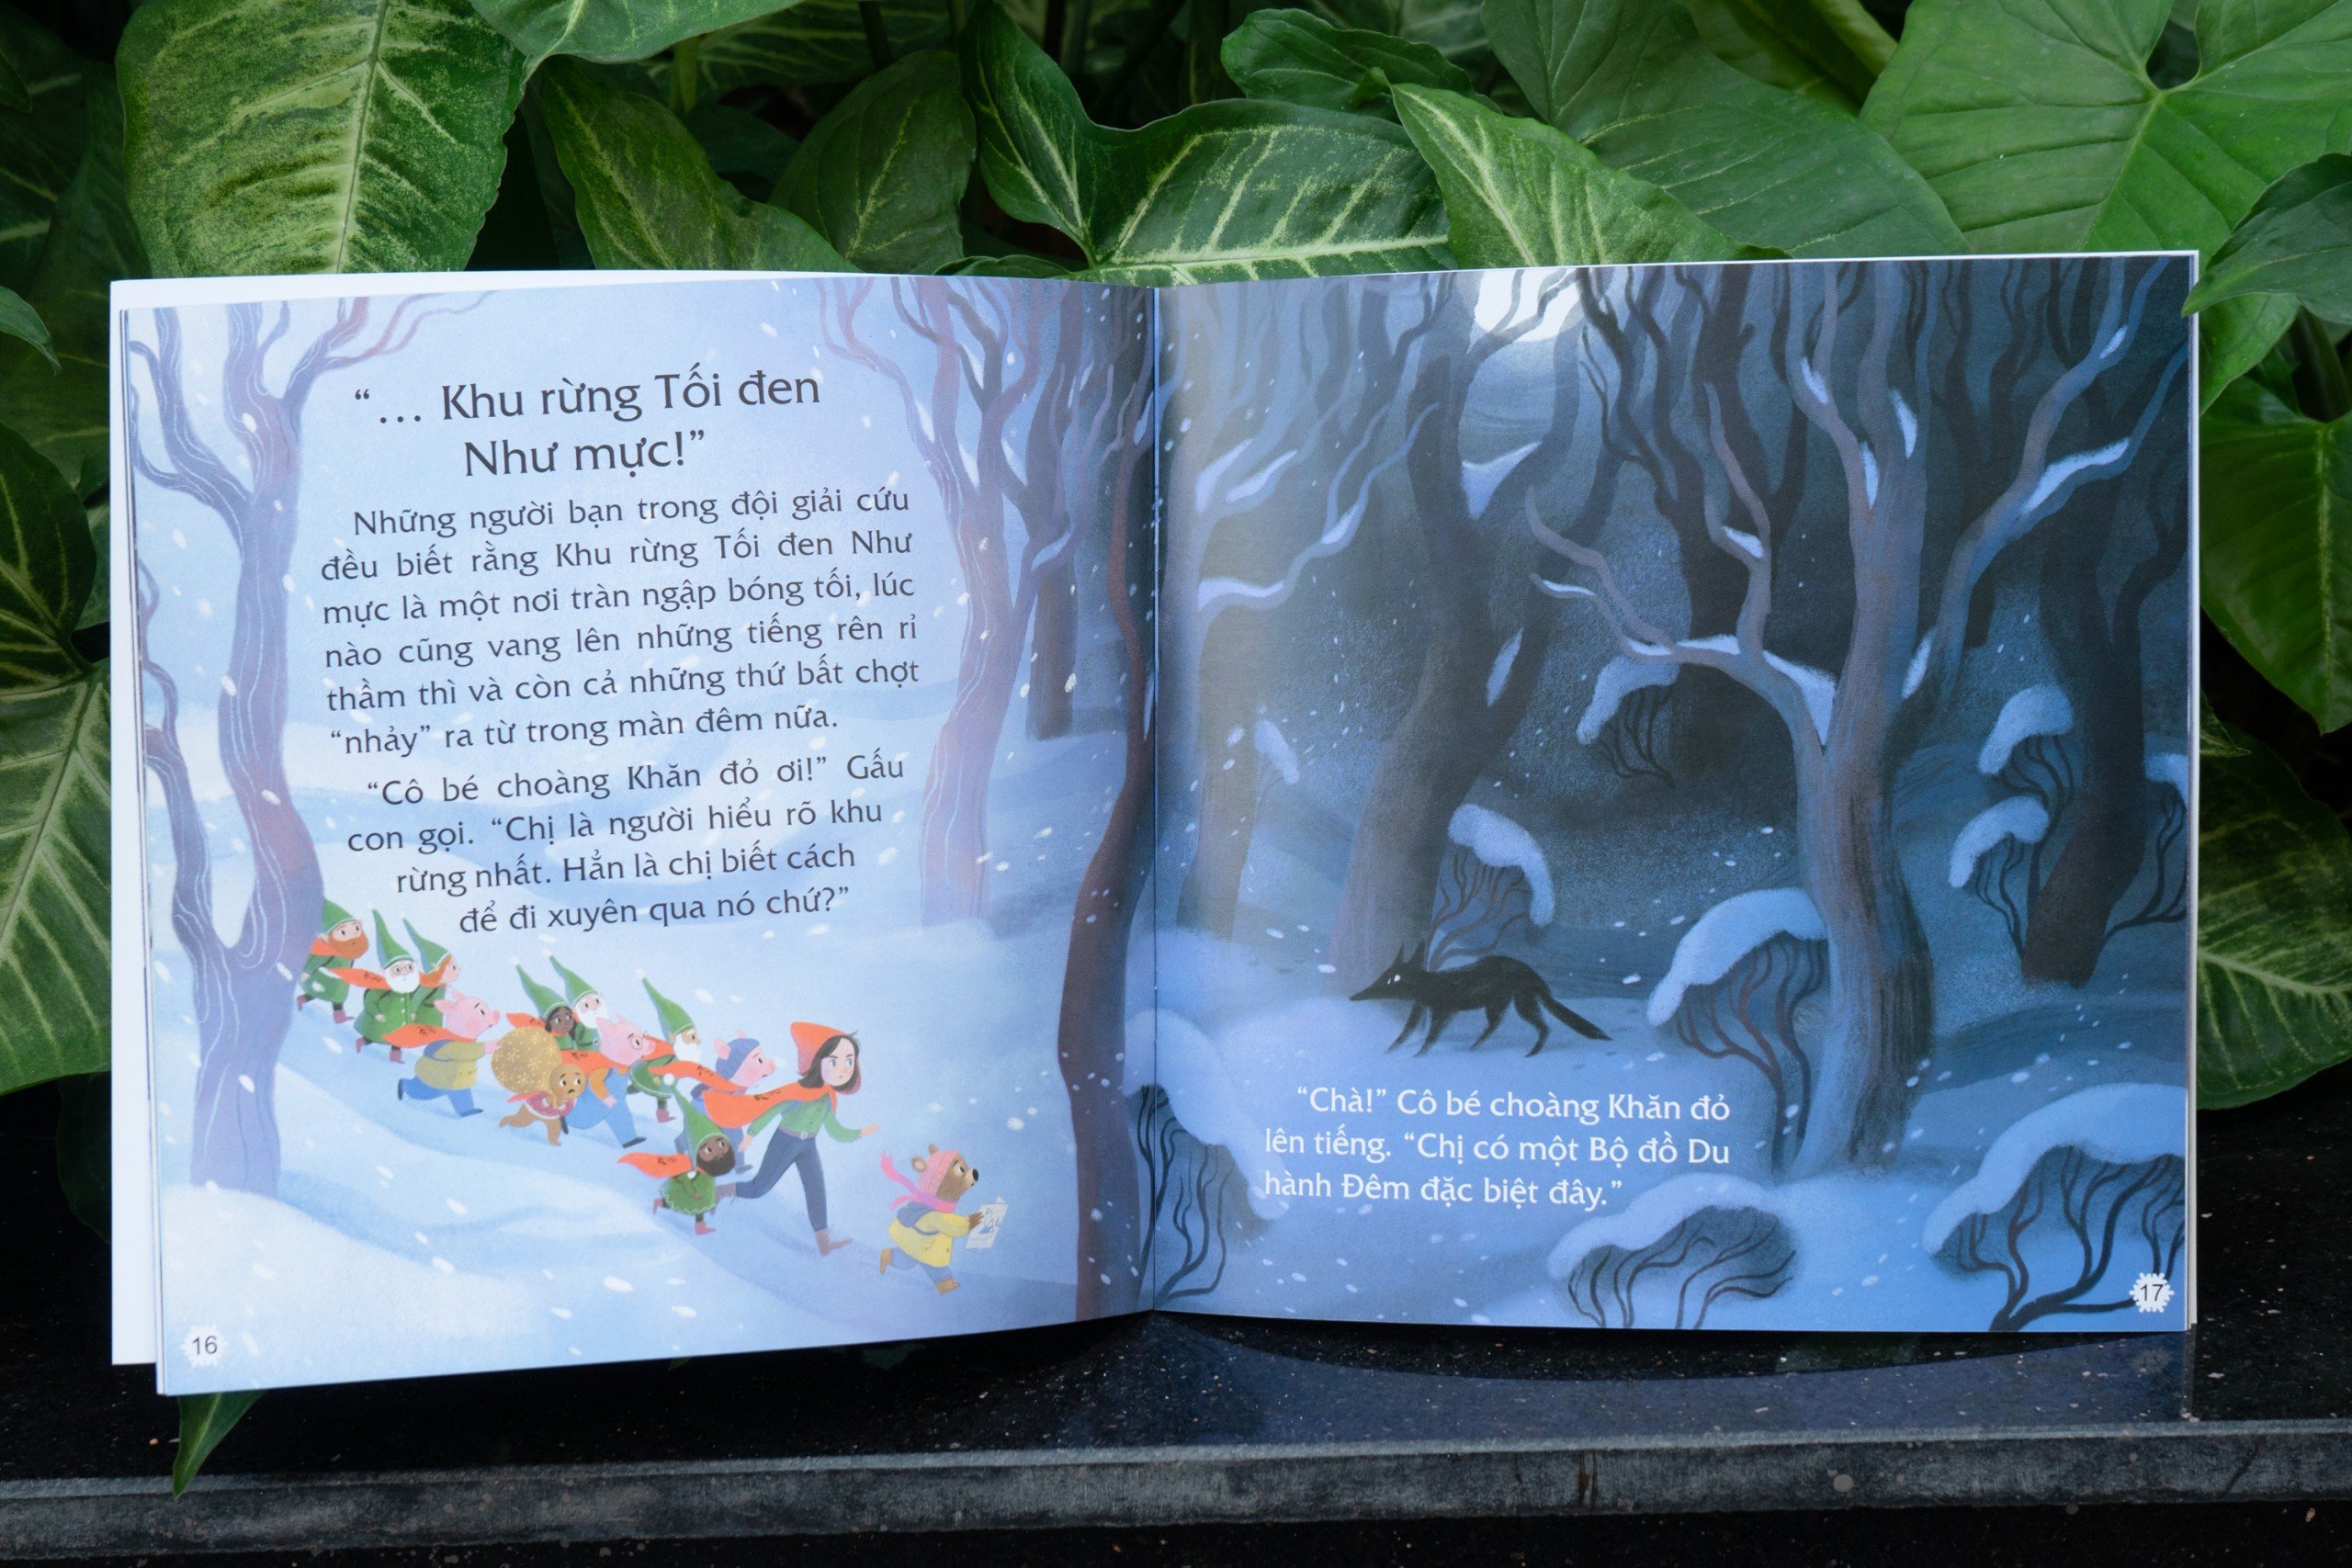 Sách Ông già Noel và Biệt đội Giải cứu Cổ Tích cho bé 3 - 9 tuổi - Đinh Tị Books